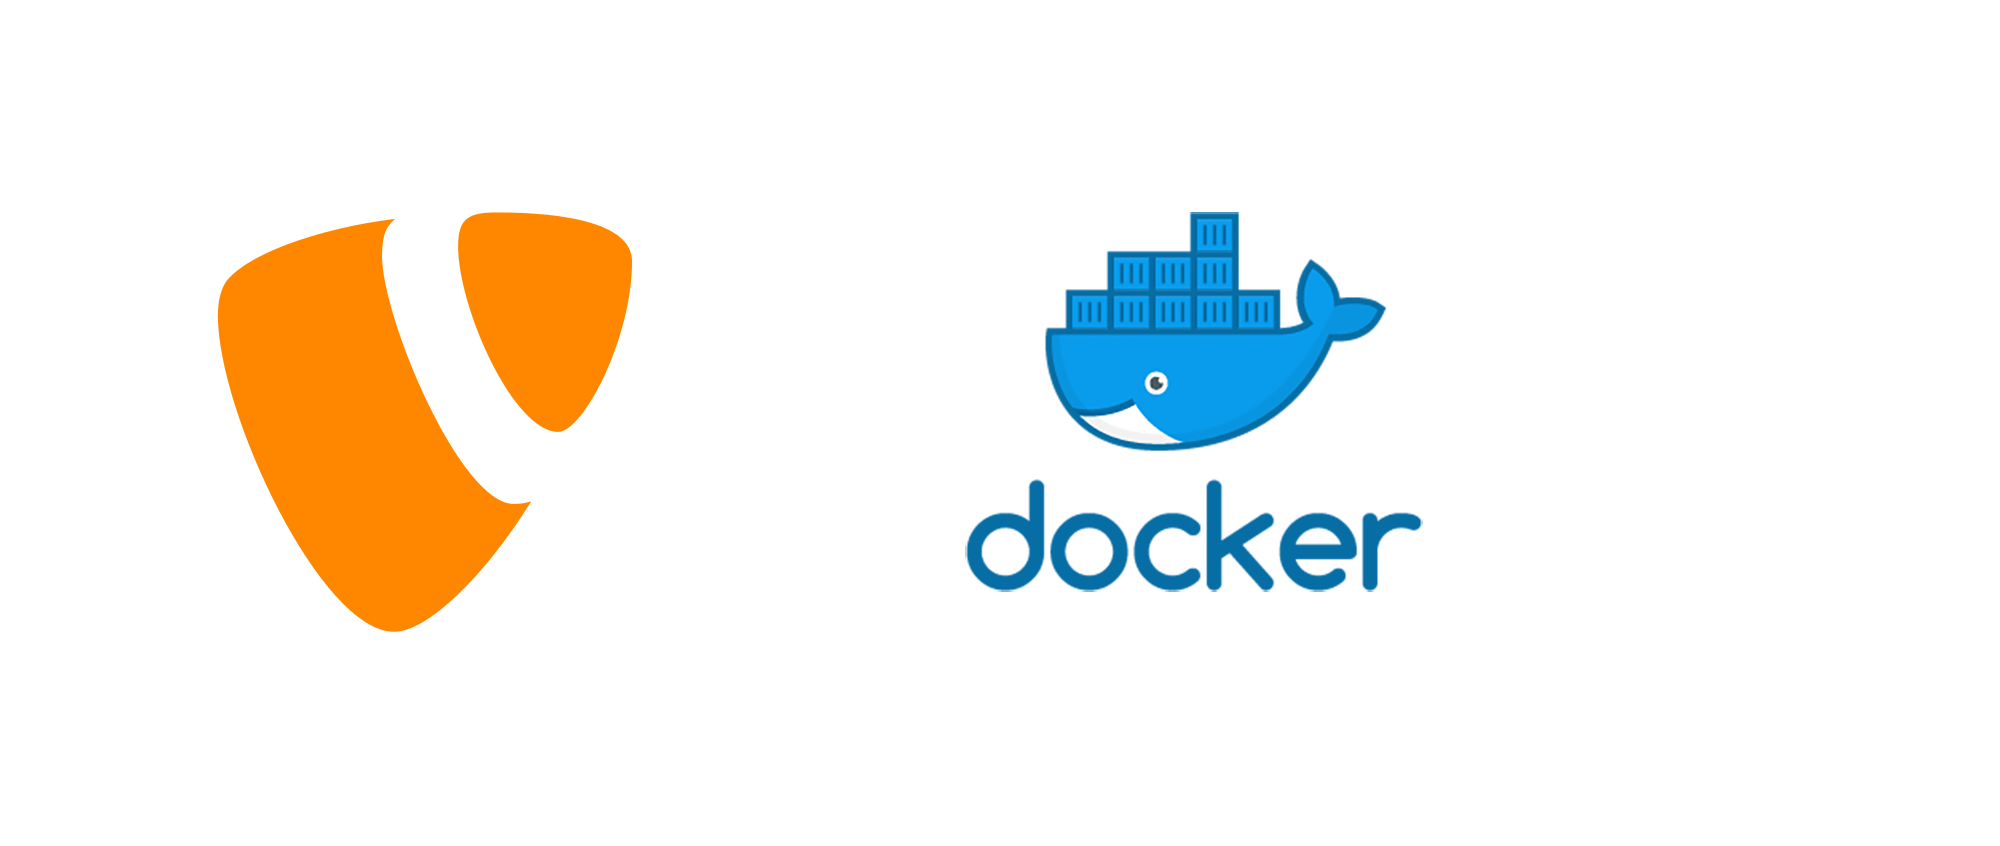 Docker exec bin bash. Докер Let it doc.